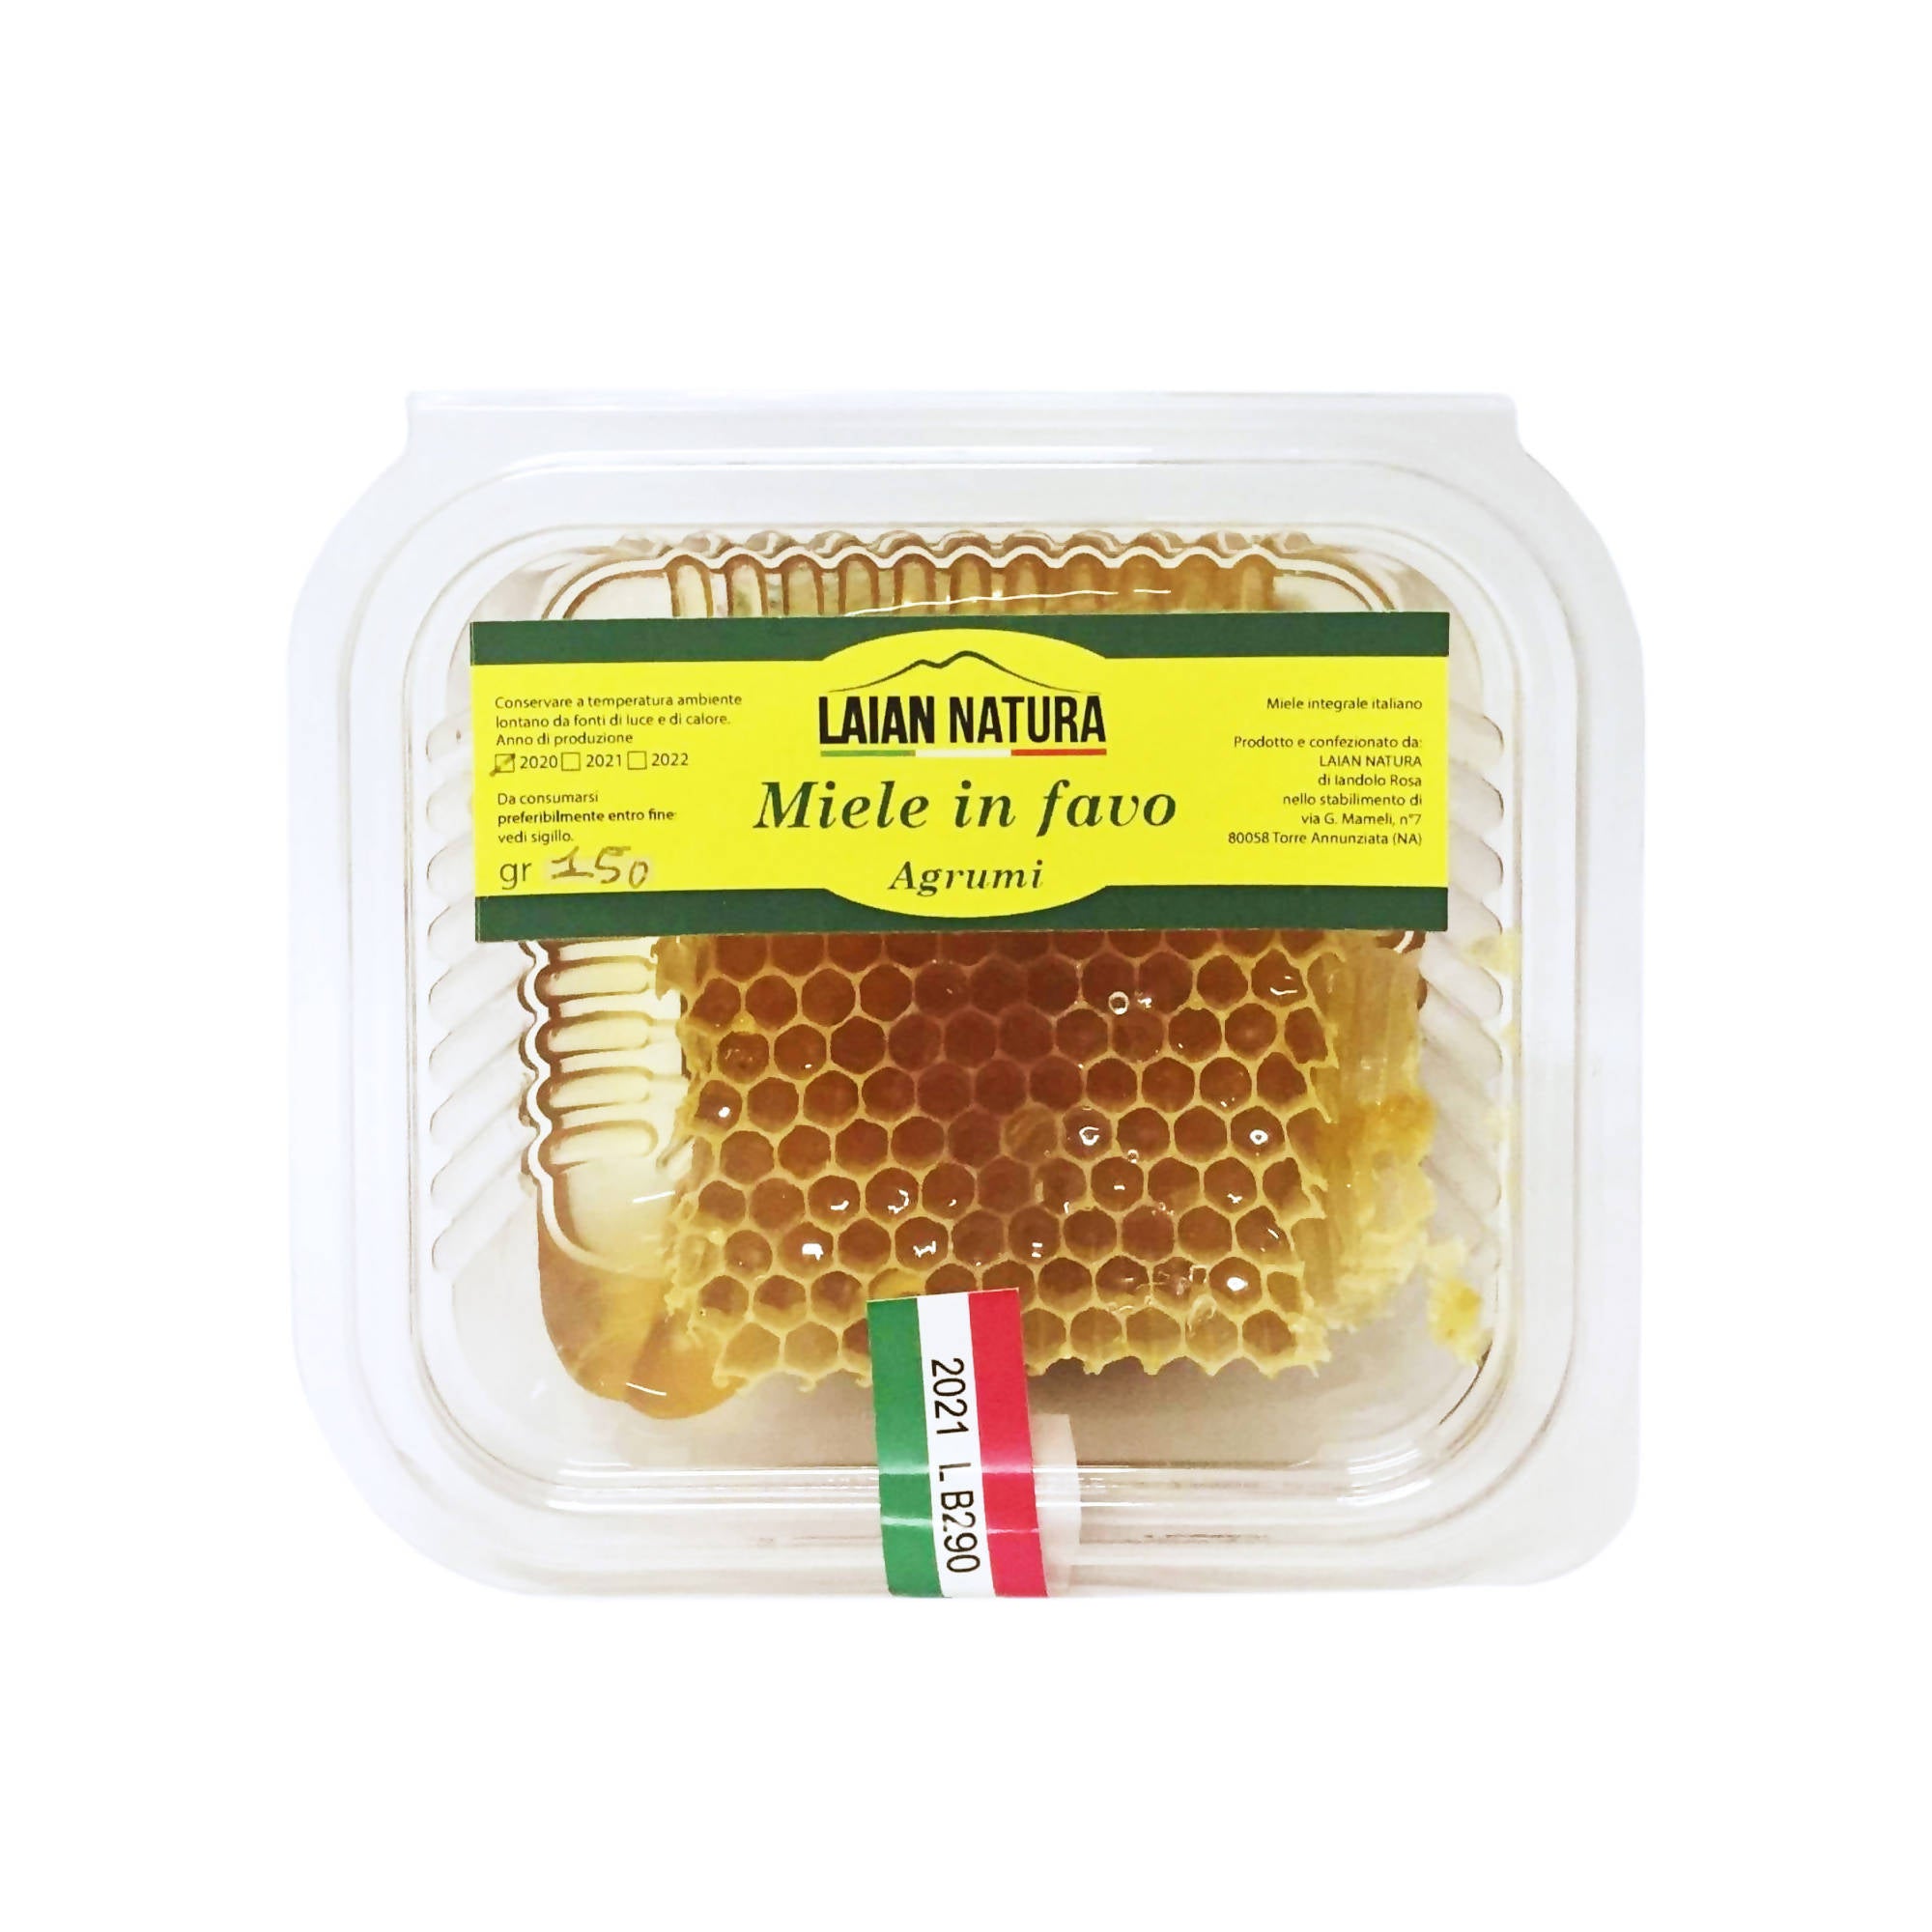 Miele In Favo Miele Italiano Puro Grezzo Al Naturale Miele In Favo Con  Polline Propoli E Pappa Reale 200 Gr